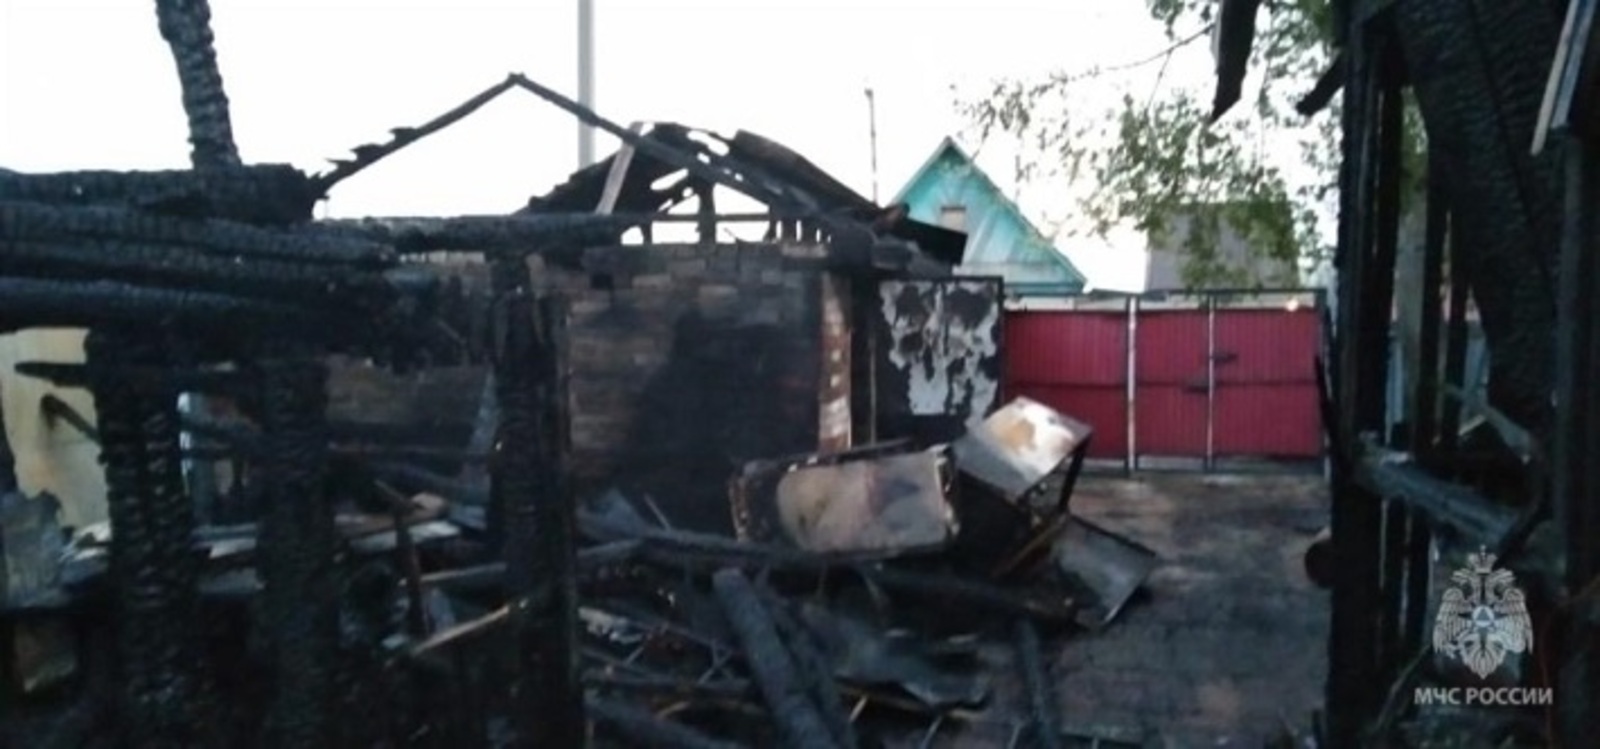 В Башкирии в селе Иглино сгорело целое подворье